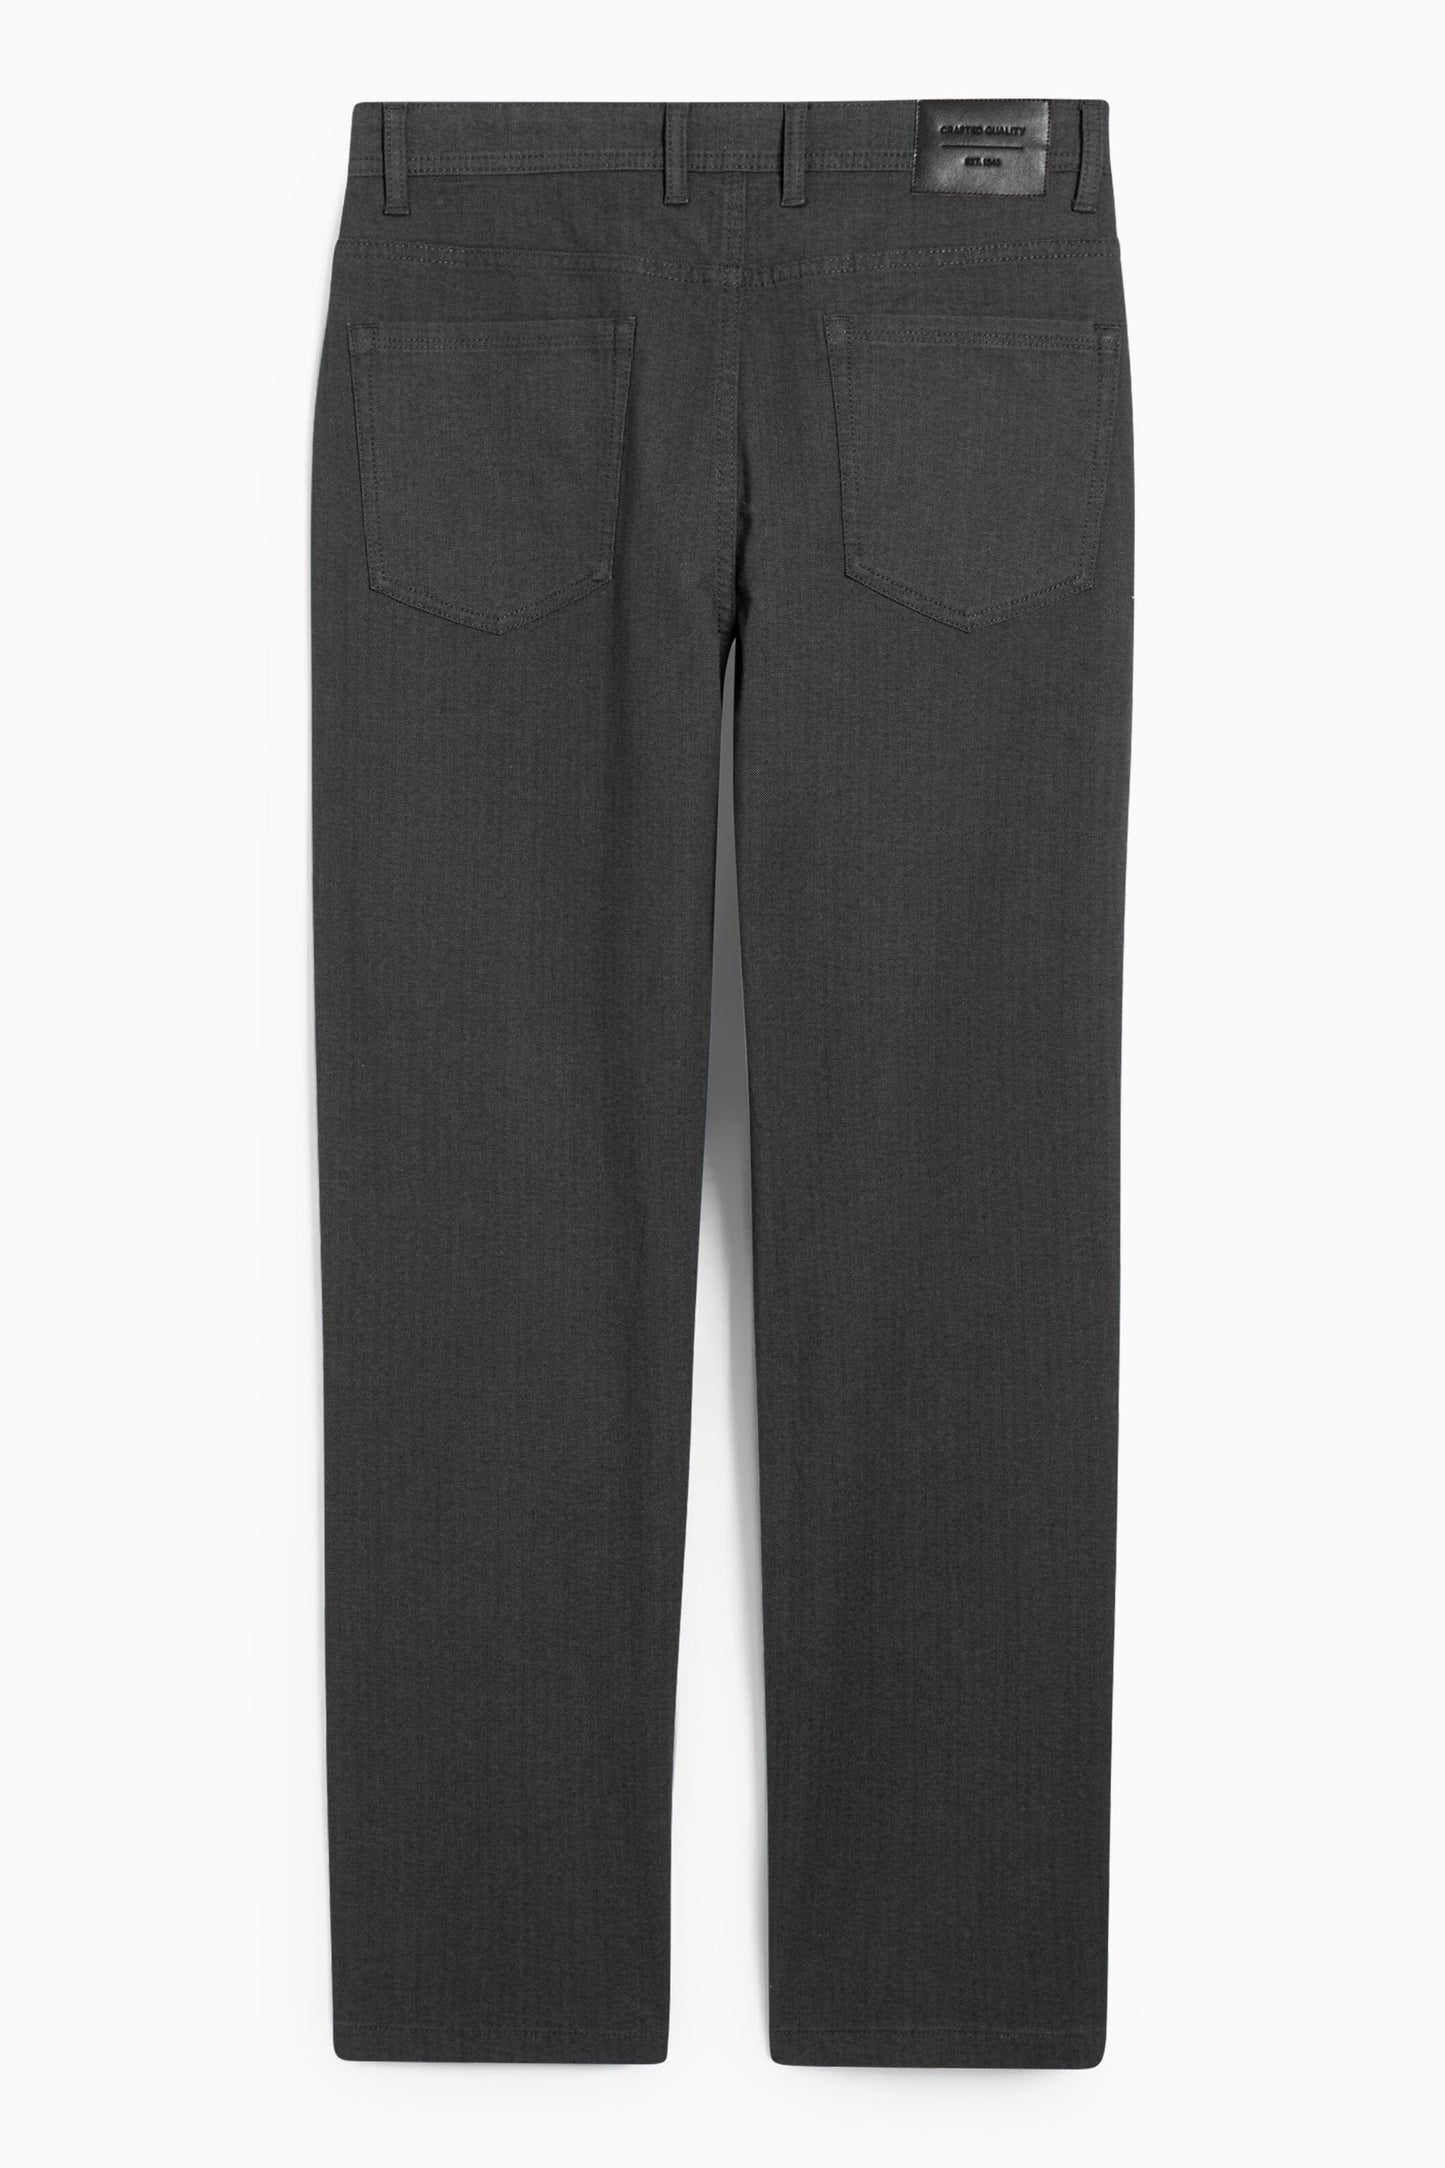 Cut Label Men's Regular Fit Chino Pants